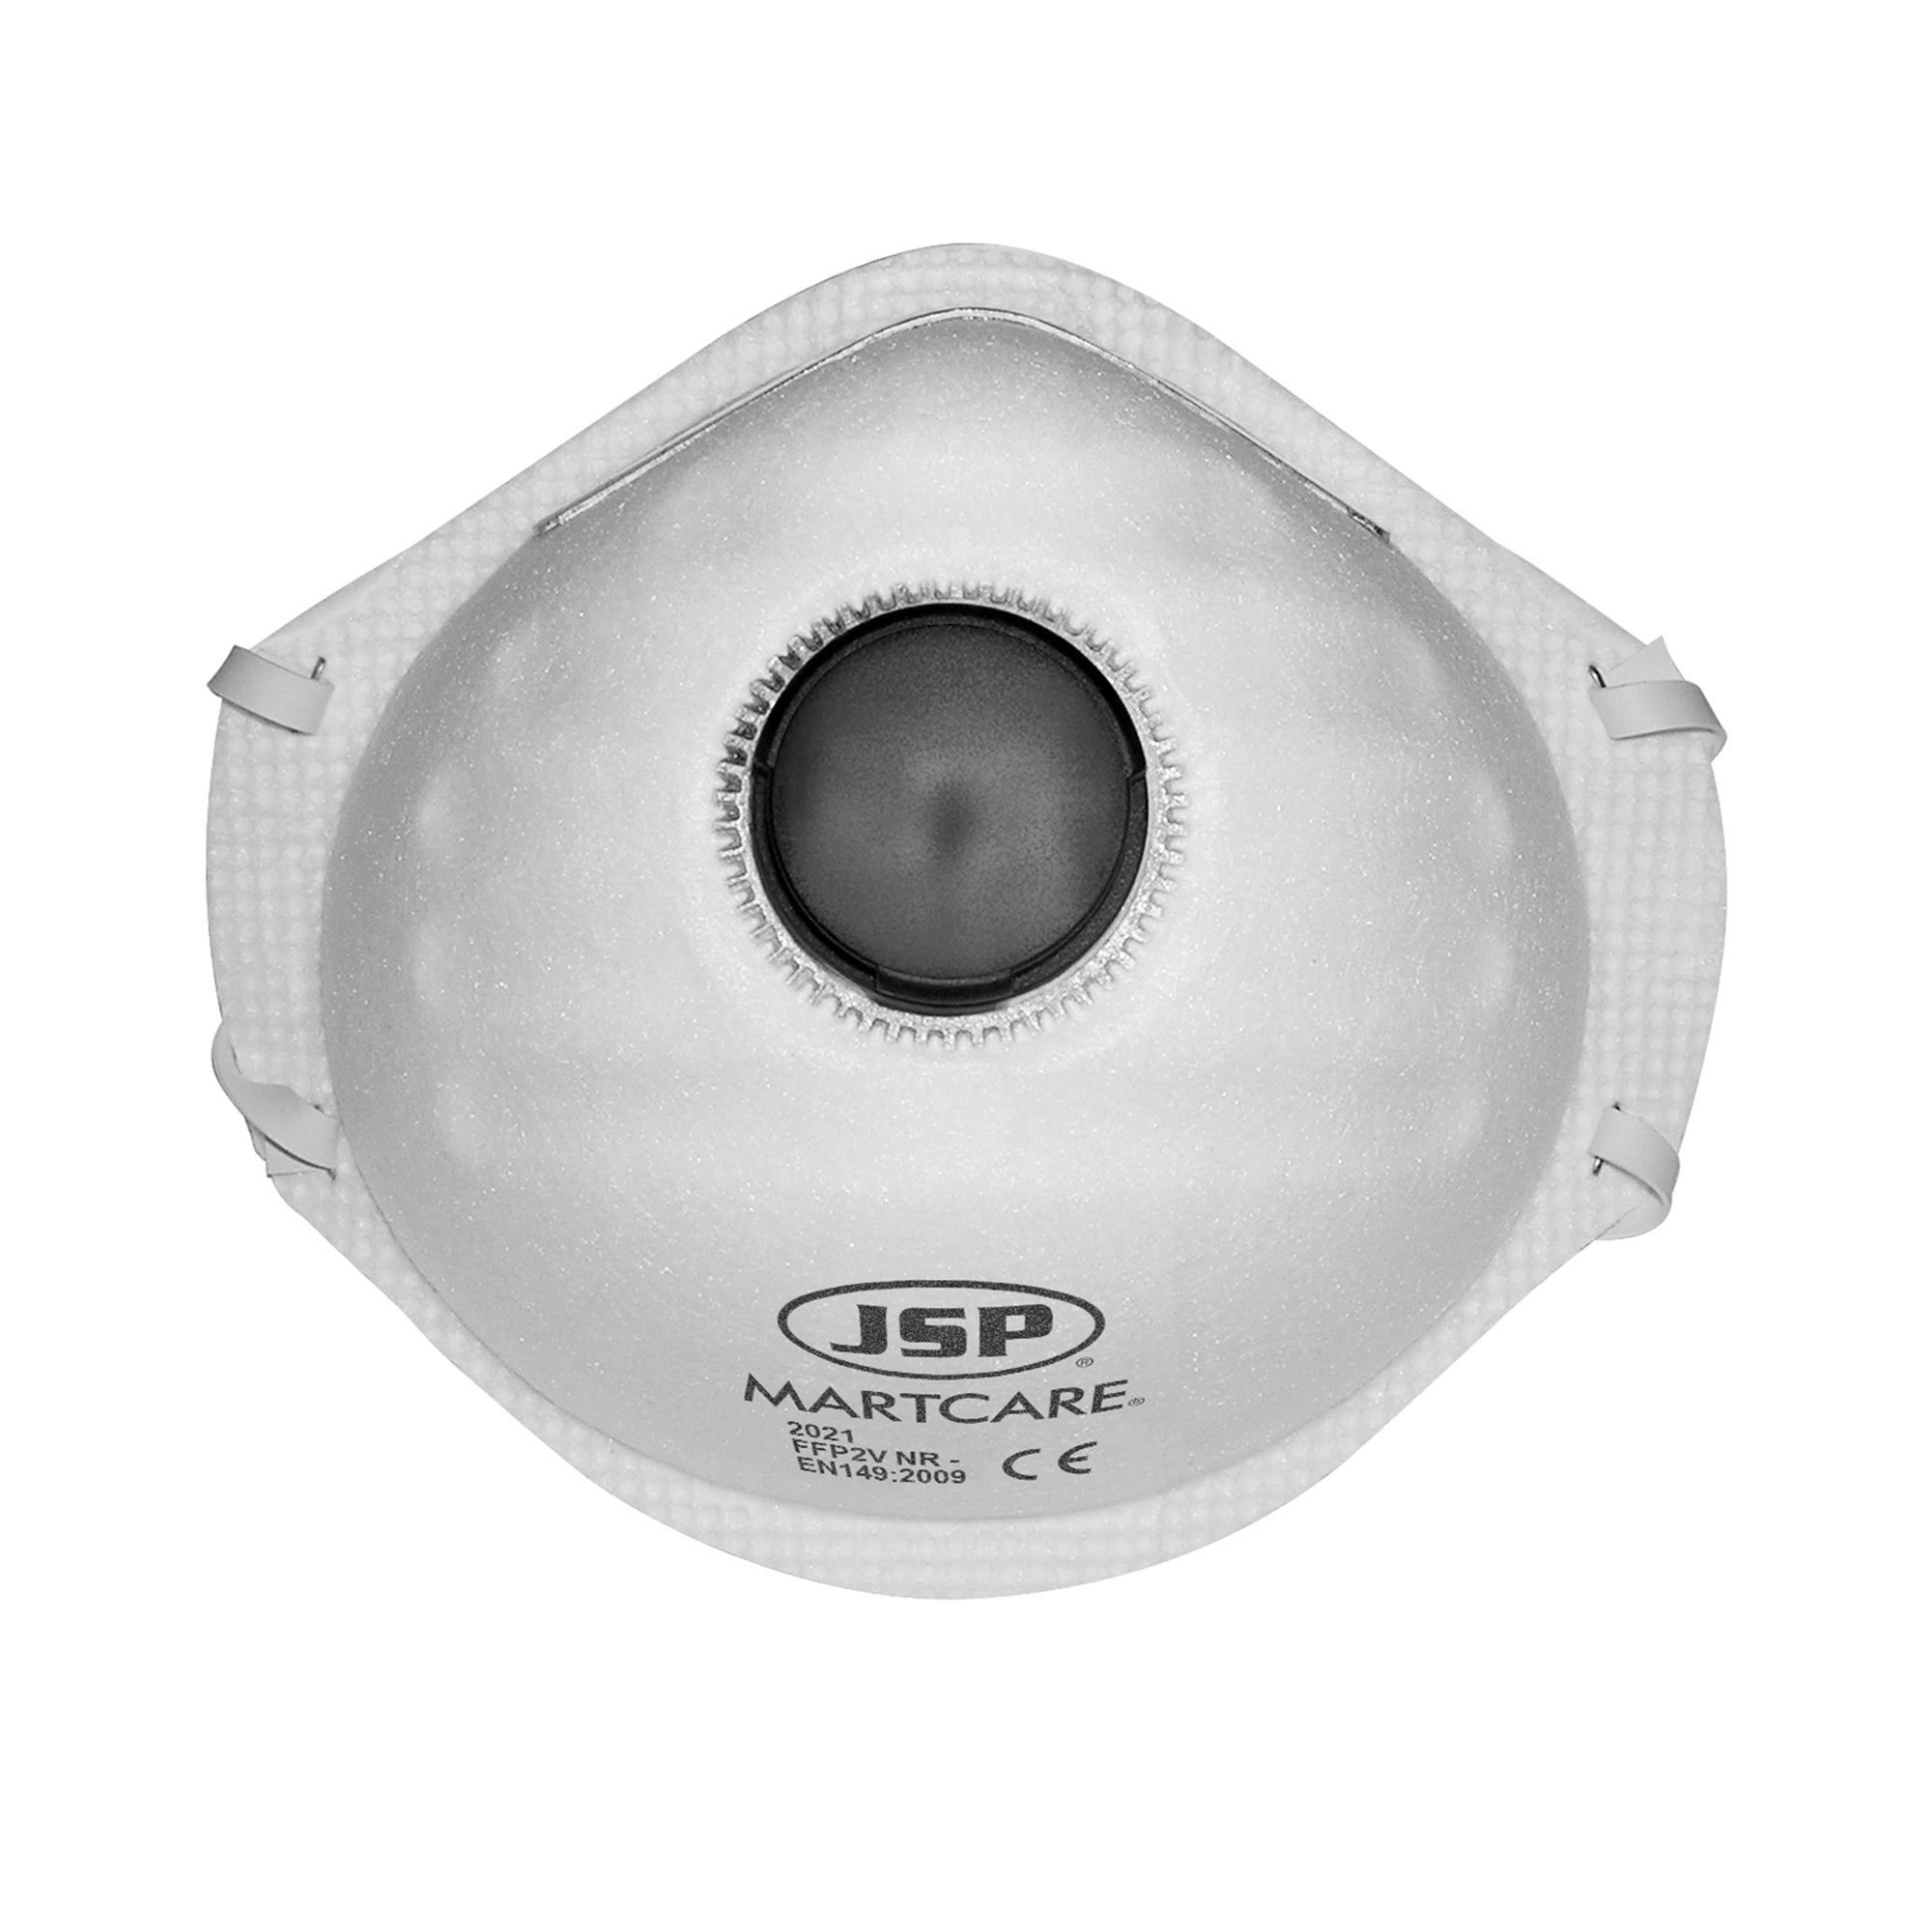 JSP Martcare® Moulded Disposable FFP2 Valved Face Mask - Box of 10